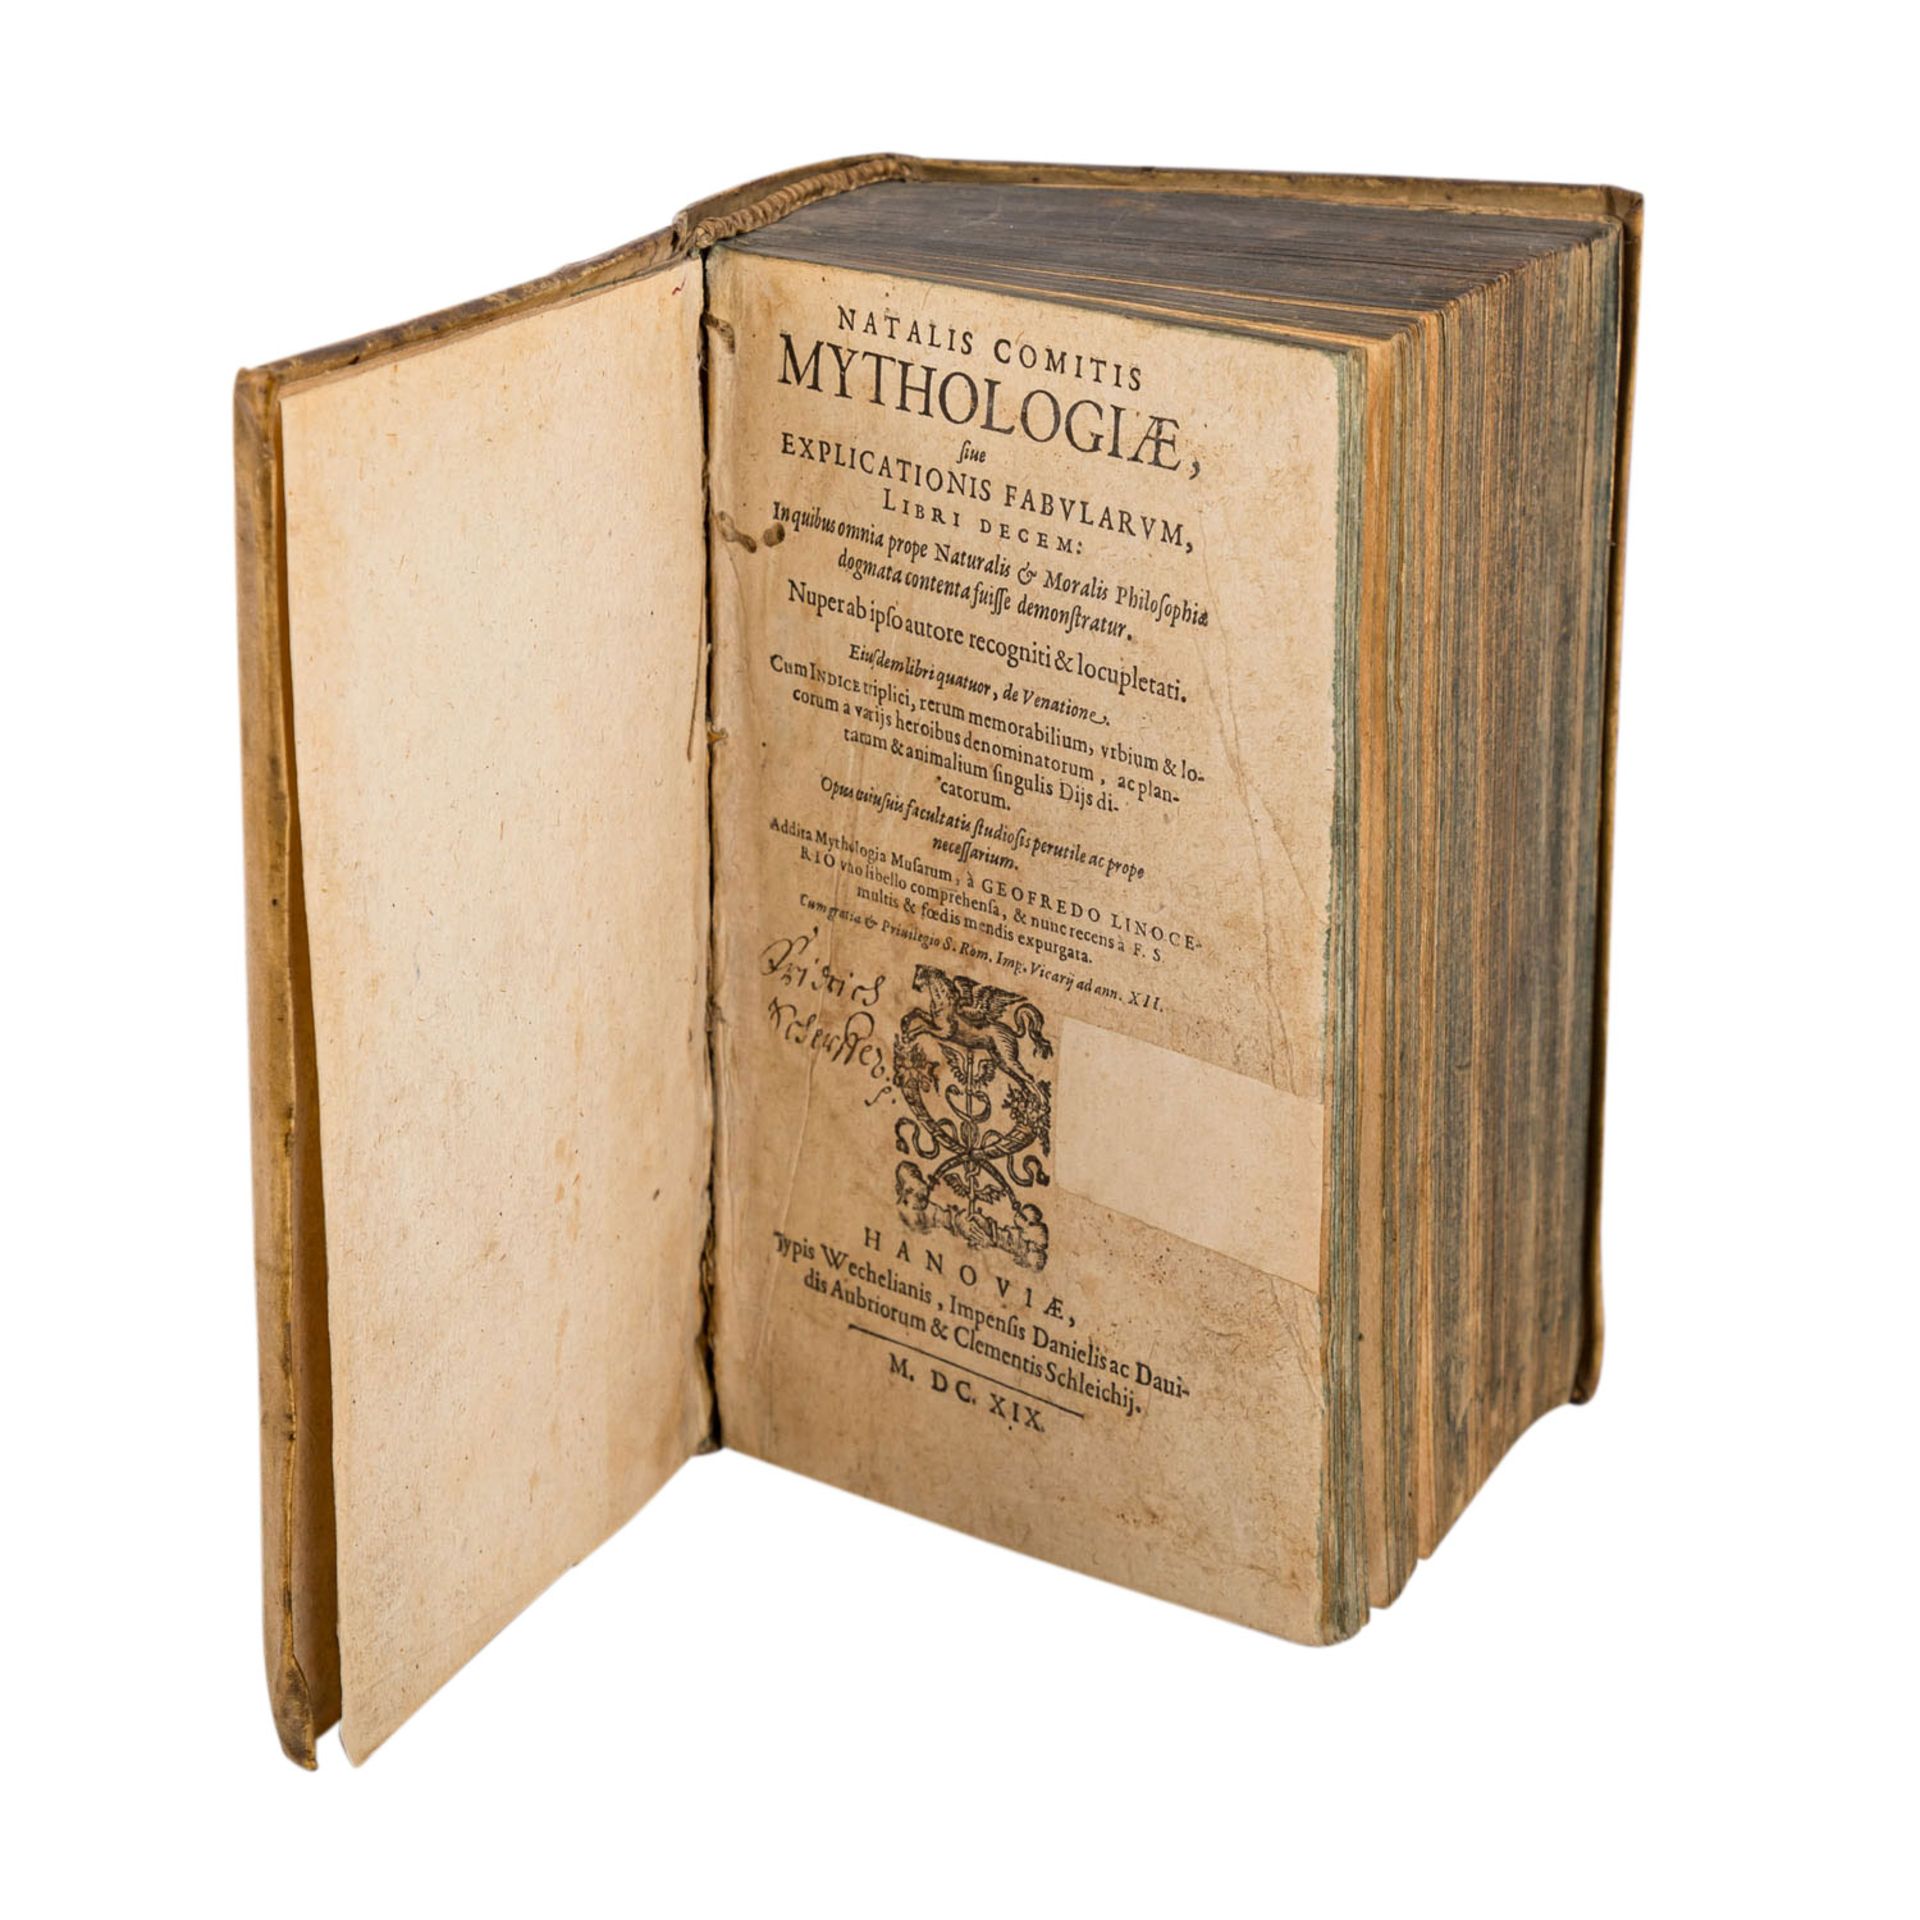 Literatur zu antiker Mythologie, 17.Jh. -Natale Conti, Mythologiae, 1619. Abgefasst in Latein und